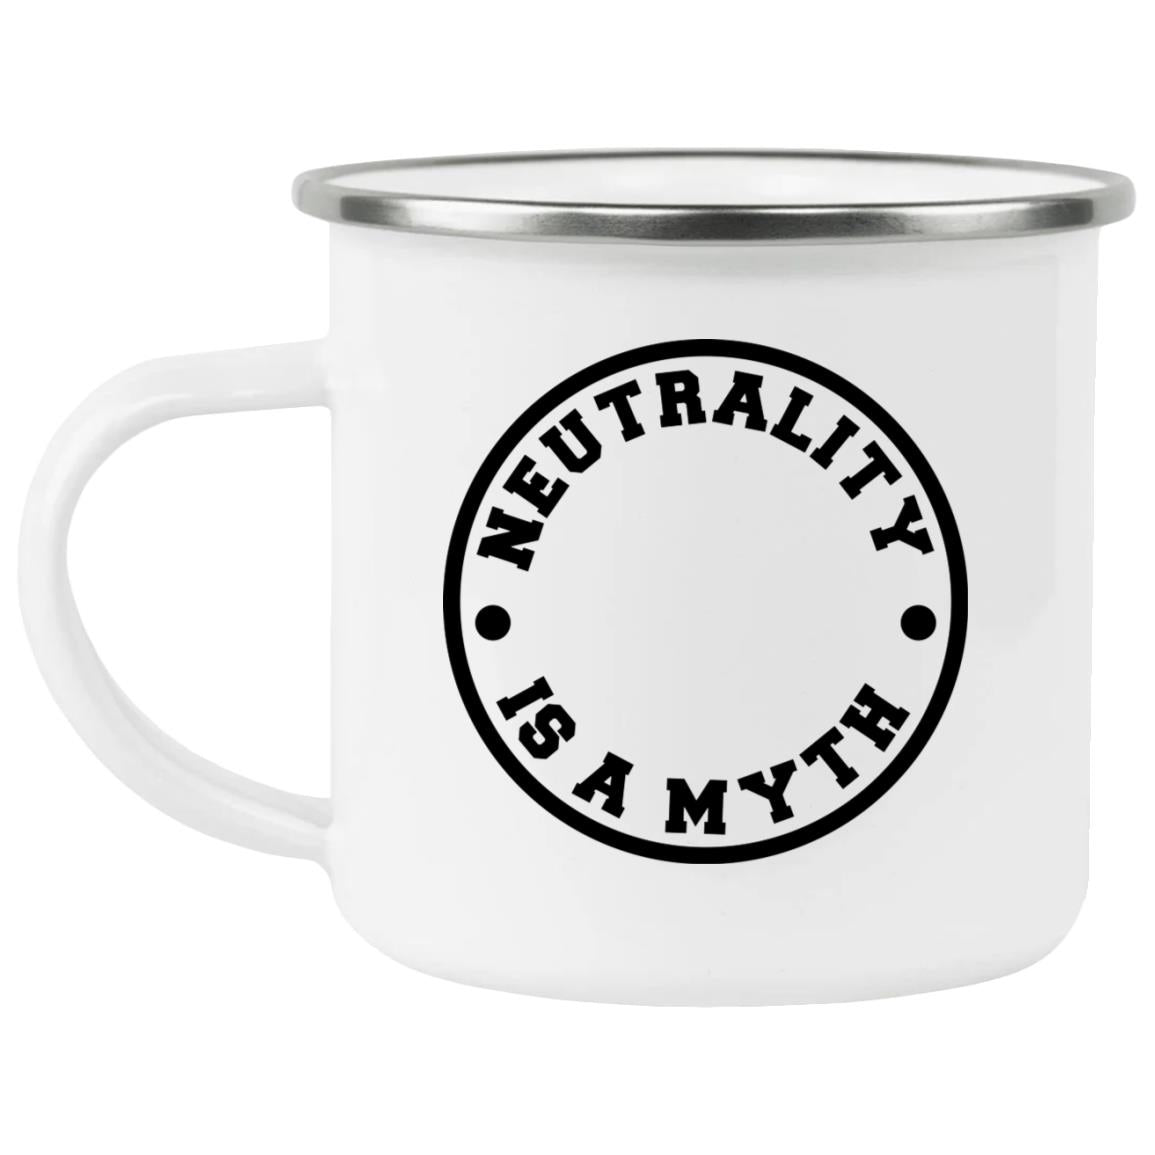 Neutrality Is A Myth (12oz Enamel Camping Mug)